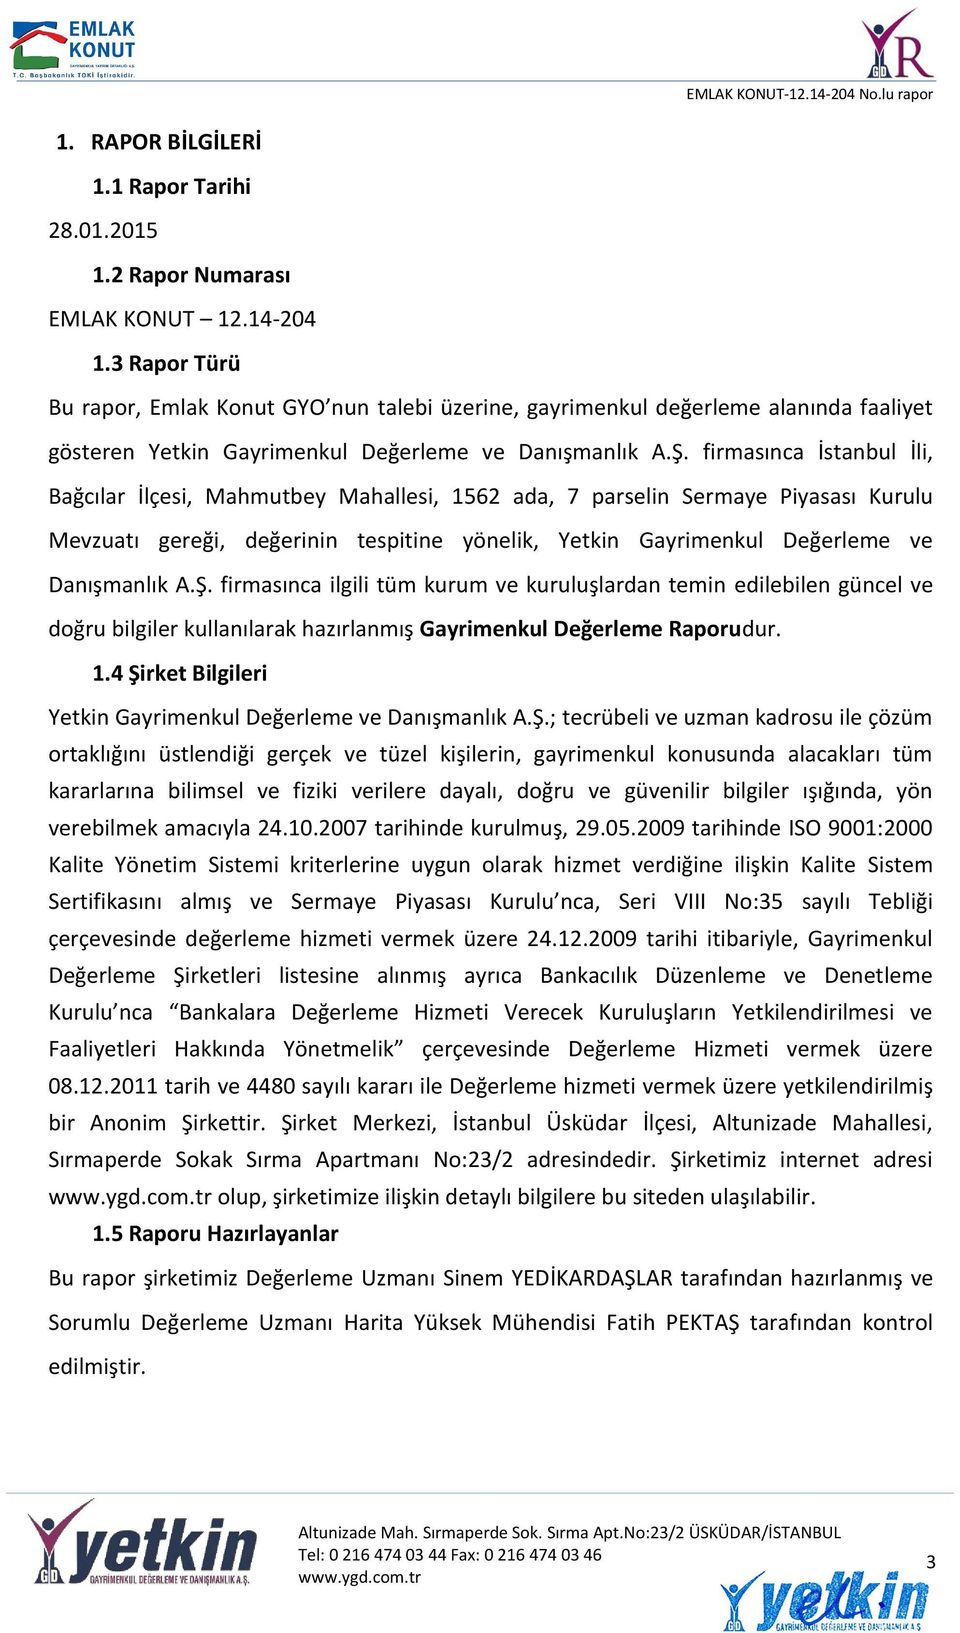 firmasınca İstanbul İli, Bağcılar İlçesi, Mahmutbey Mahallesi, 1562 ada, 7 parselin Sermaye Piyasası Kurulu Mevzuatı gereği, değerinin tespitine yönelik, Yetkin Gayrimenkul Değerleme ve Danışmanlık A.